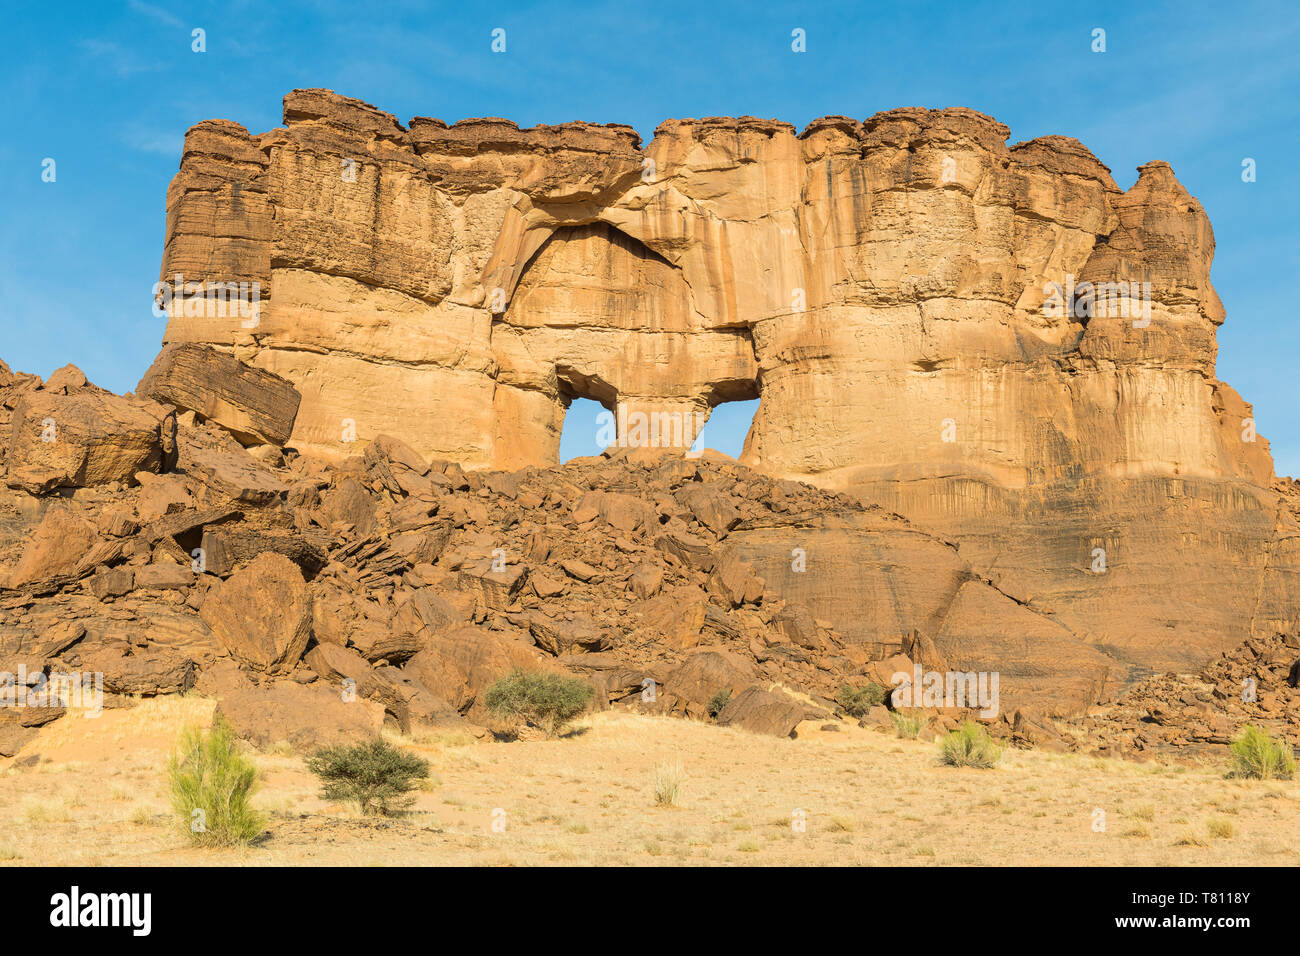 La fenêtre de l'arche de roche l'Ennedi Plateau, Site du patrimoine mondial de l'Ennedi, Tchad, Afrique, région Banque D'Images